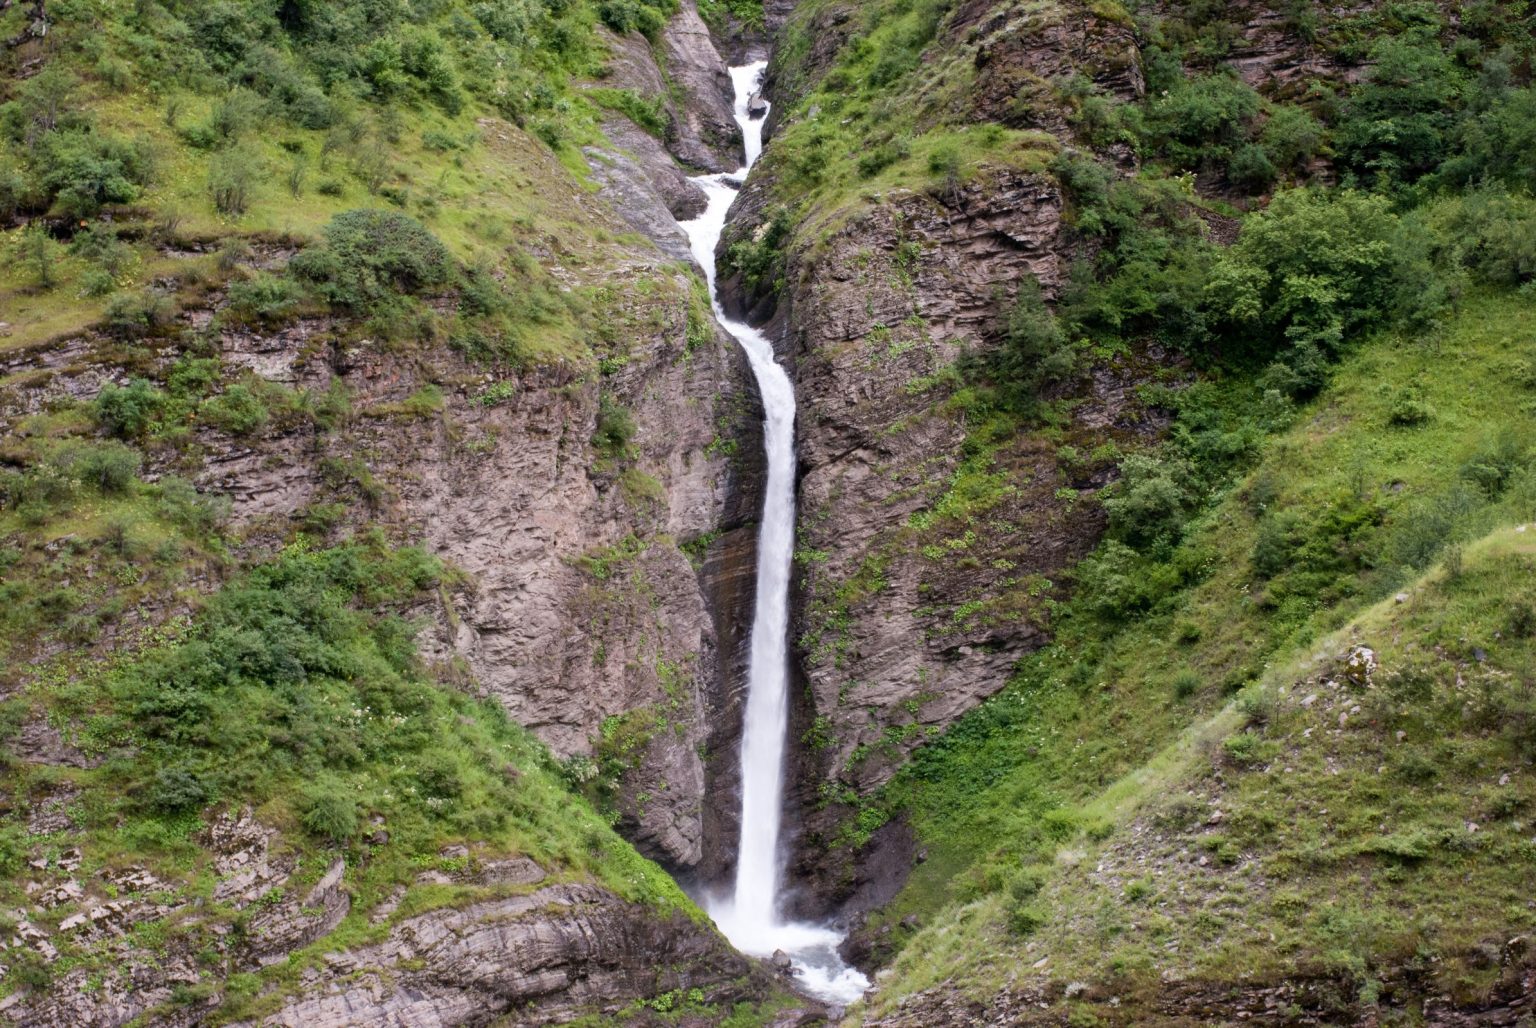 Sach Pass - Killar - Pangi Valley